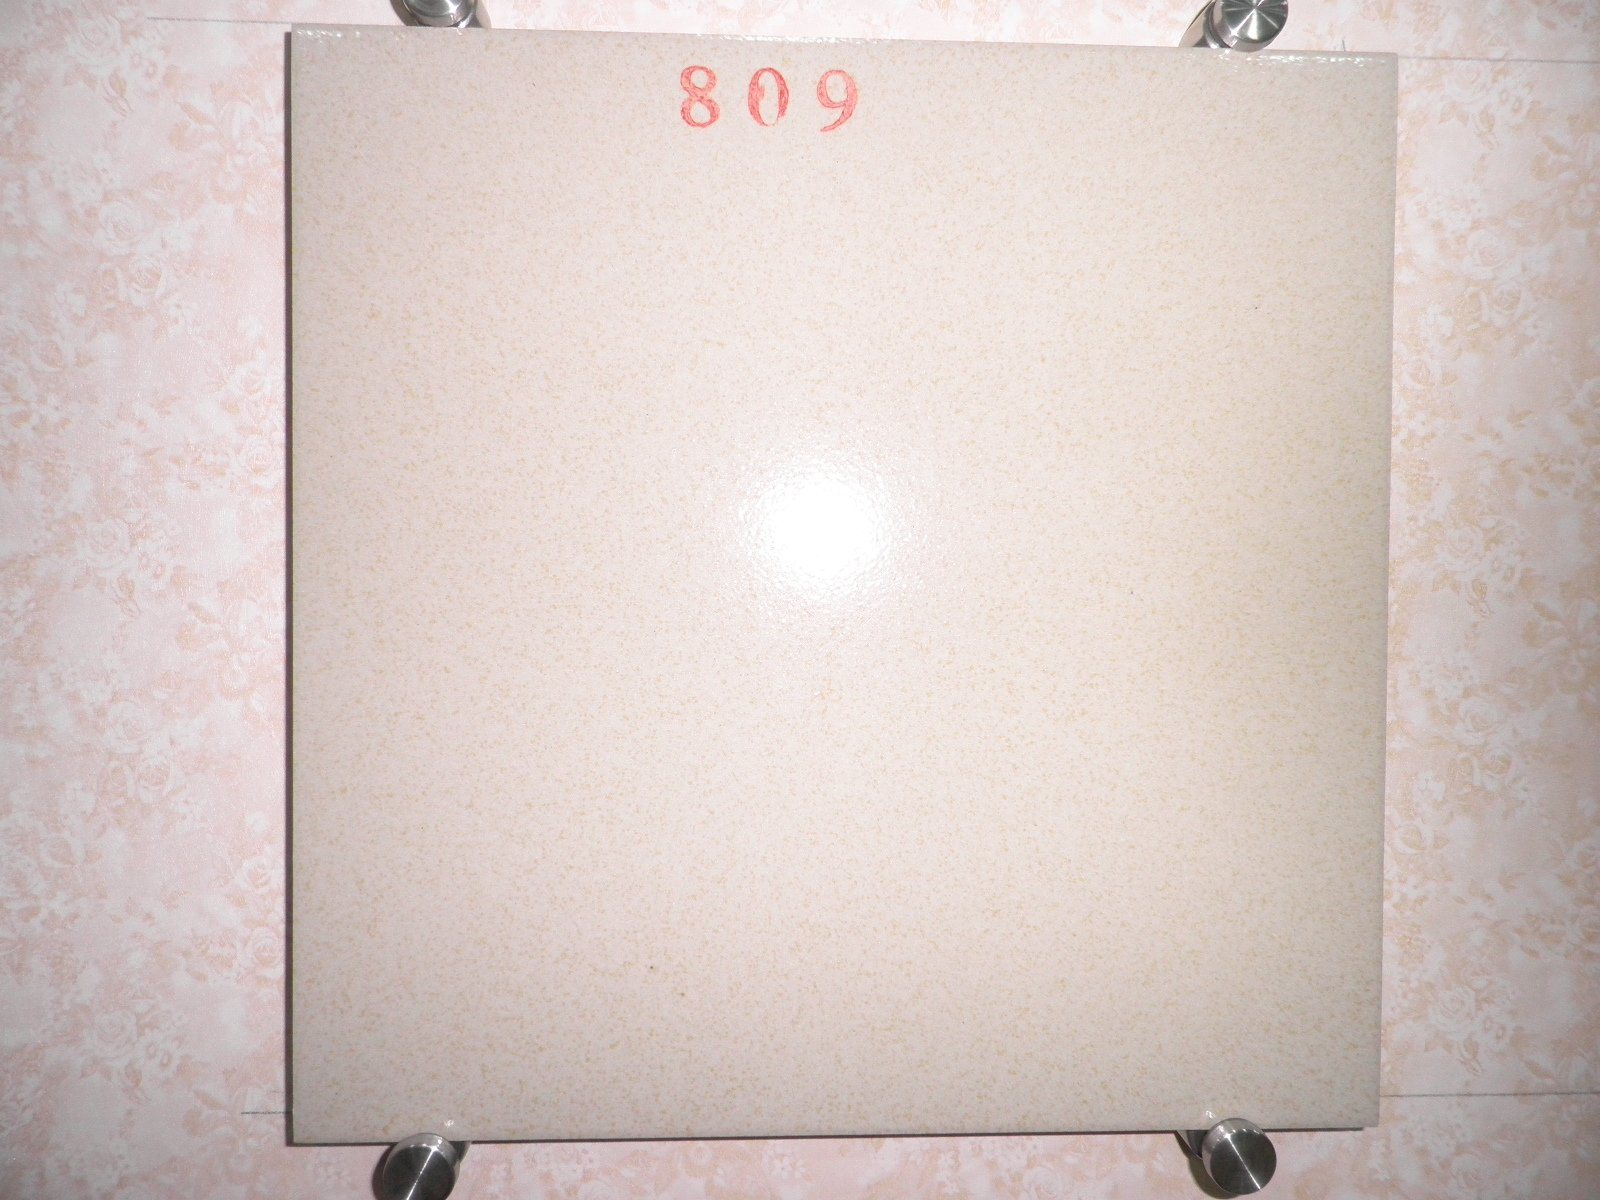 300X300mm Fullbody Ceramic Salt&Pepper Sandstone Floor Tile